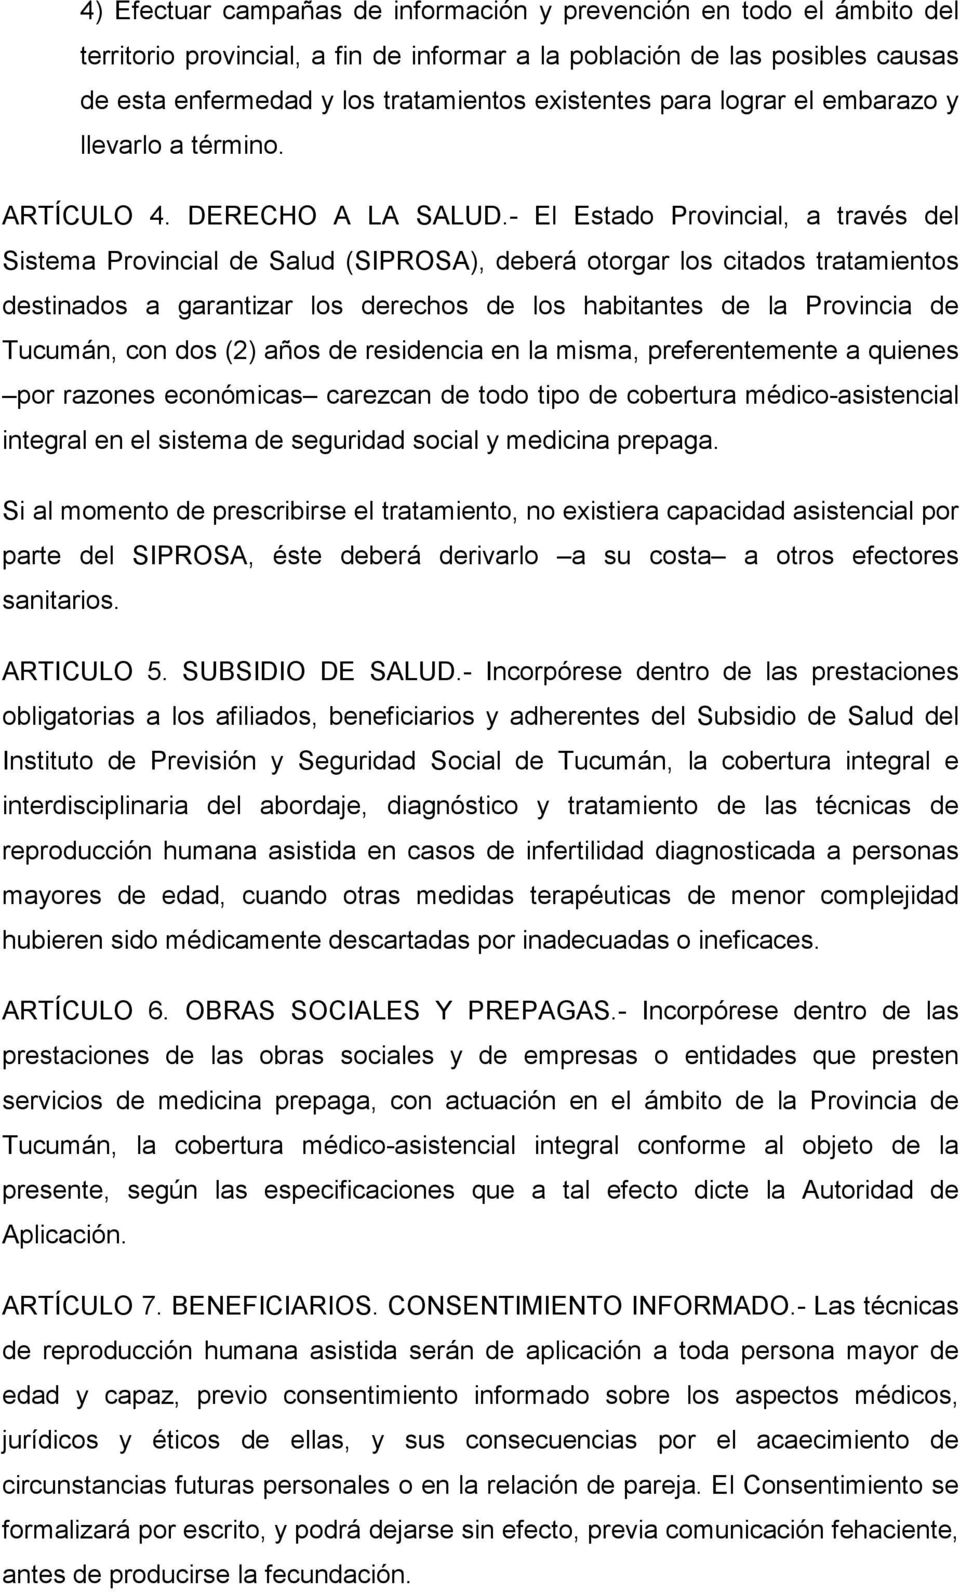 - El Estado Provincial, a través del Sistema Provincial de Salud (SIPROSA), deberá otorgar los citados tratamientos destinados a garantizar los derechos de los habitantes de la Provincia de Tucumán,